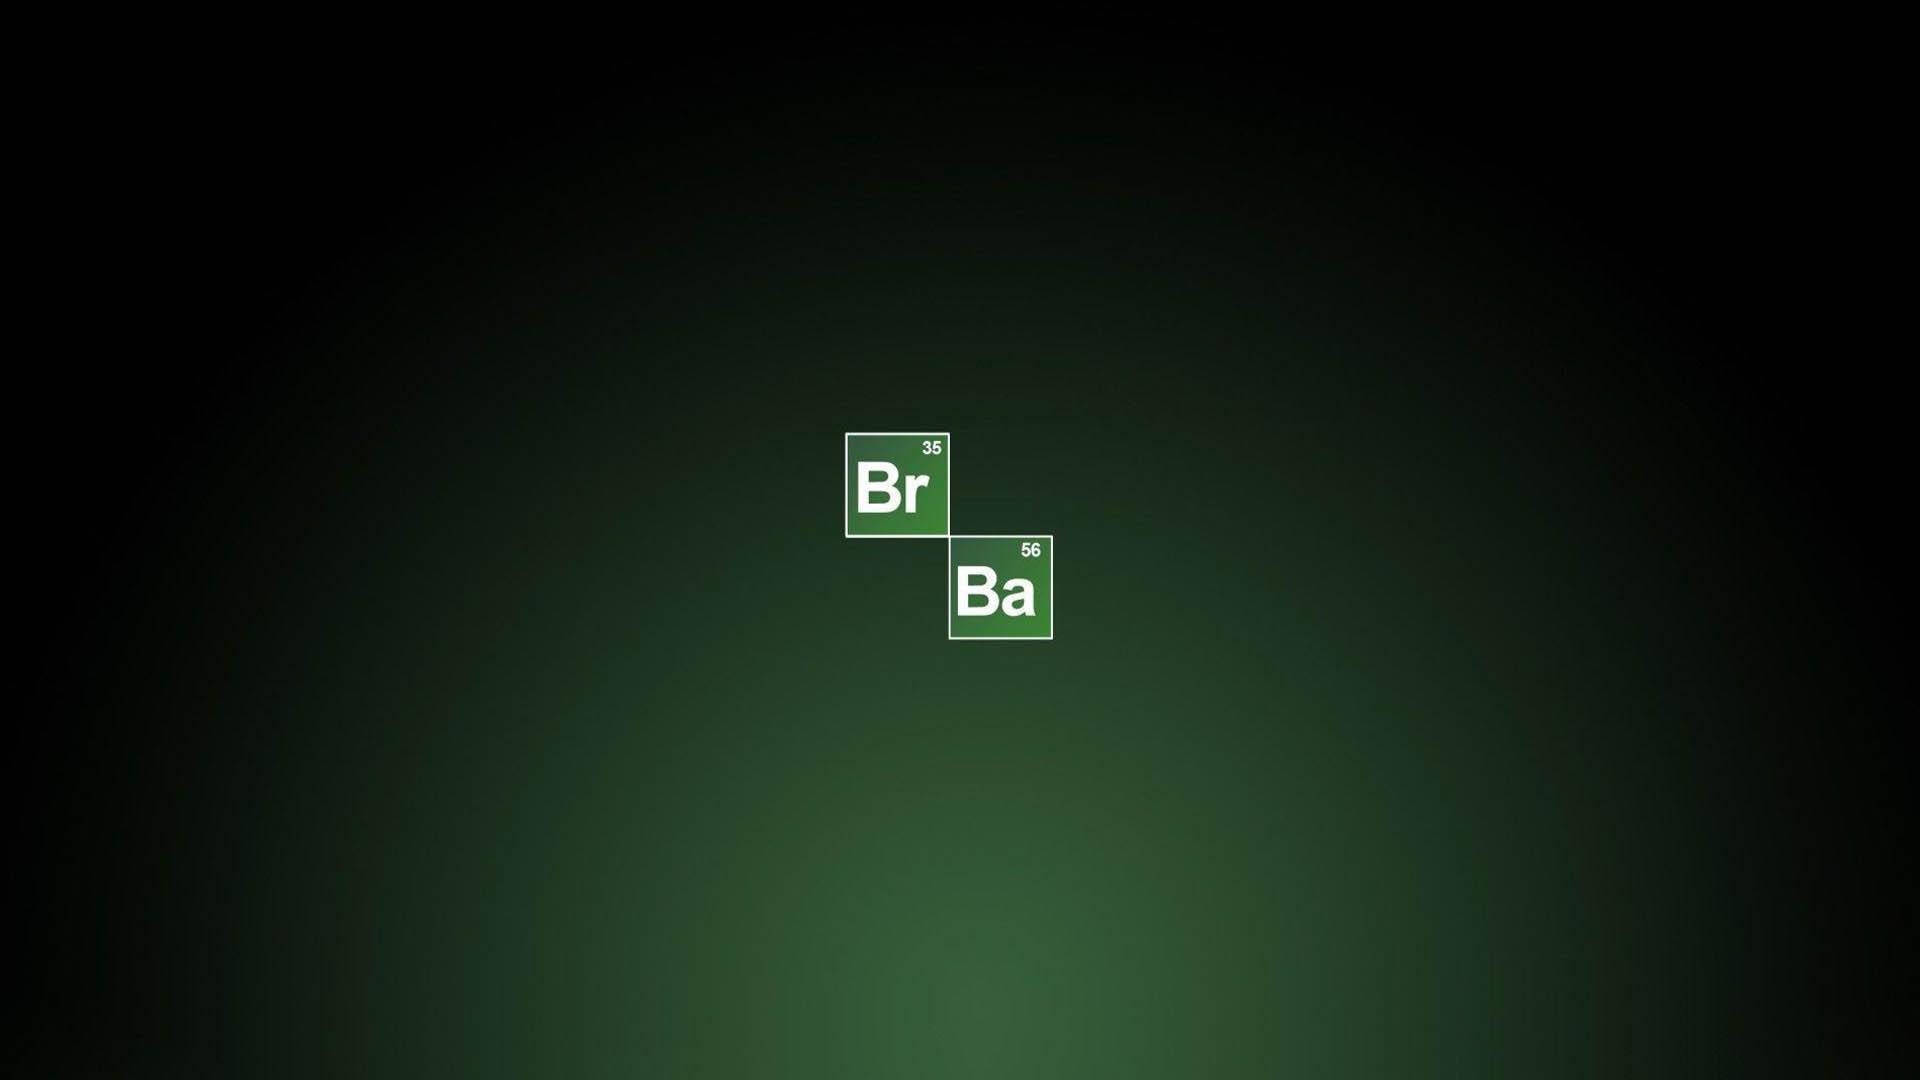 لوگوی سریال Breaking Bad که با حروف جدول مندلیف طراحی شده